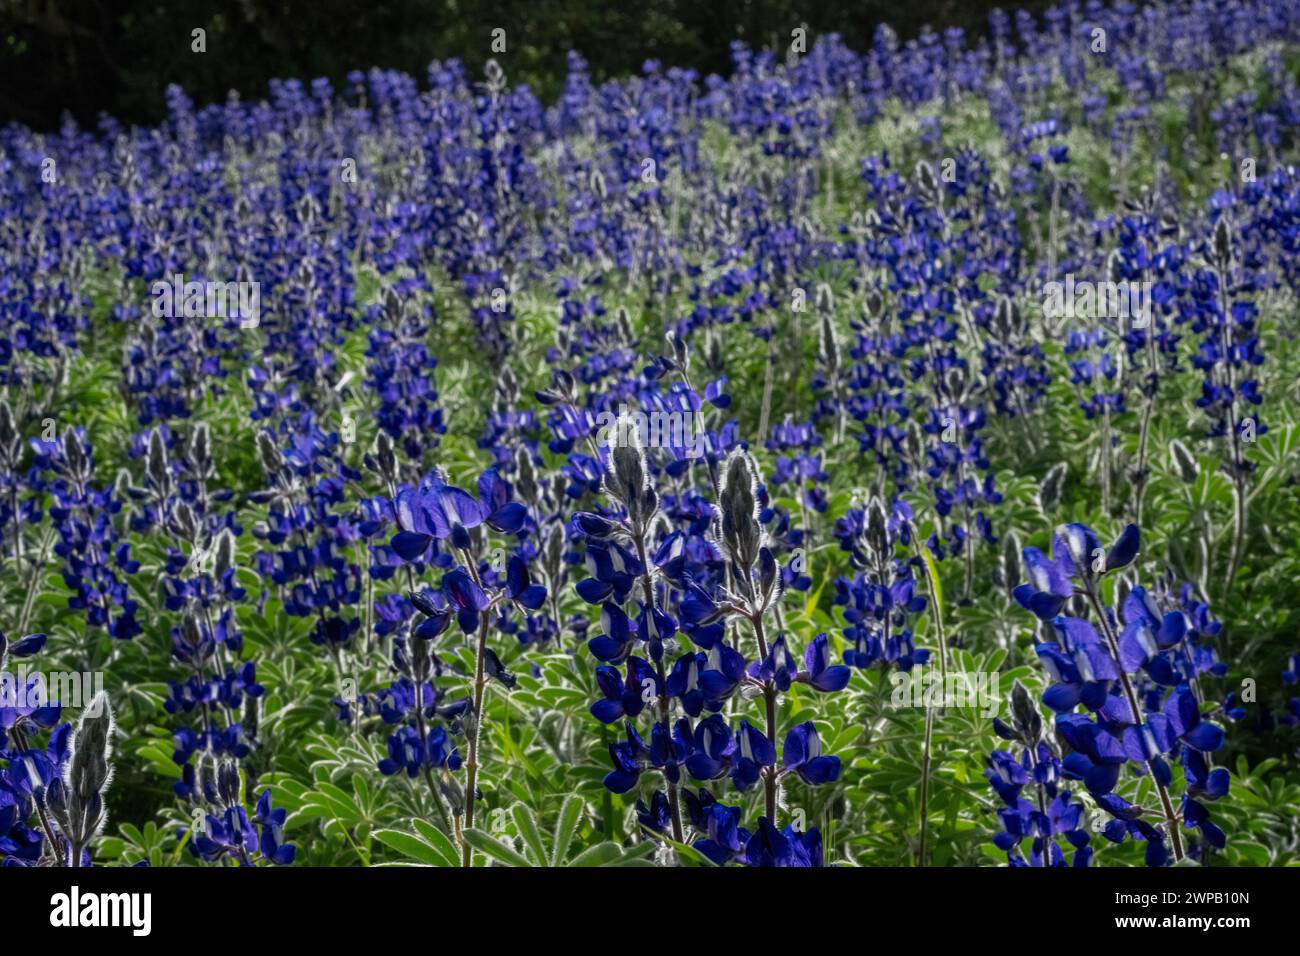 Teppiche des blauen Lupinus pilosus in Israel. Lupinus pilosus, im Judäischen Vorgebirge allgemein als blaue Lupine bekannt Stockfoto